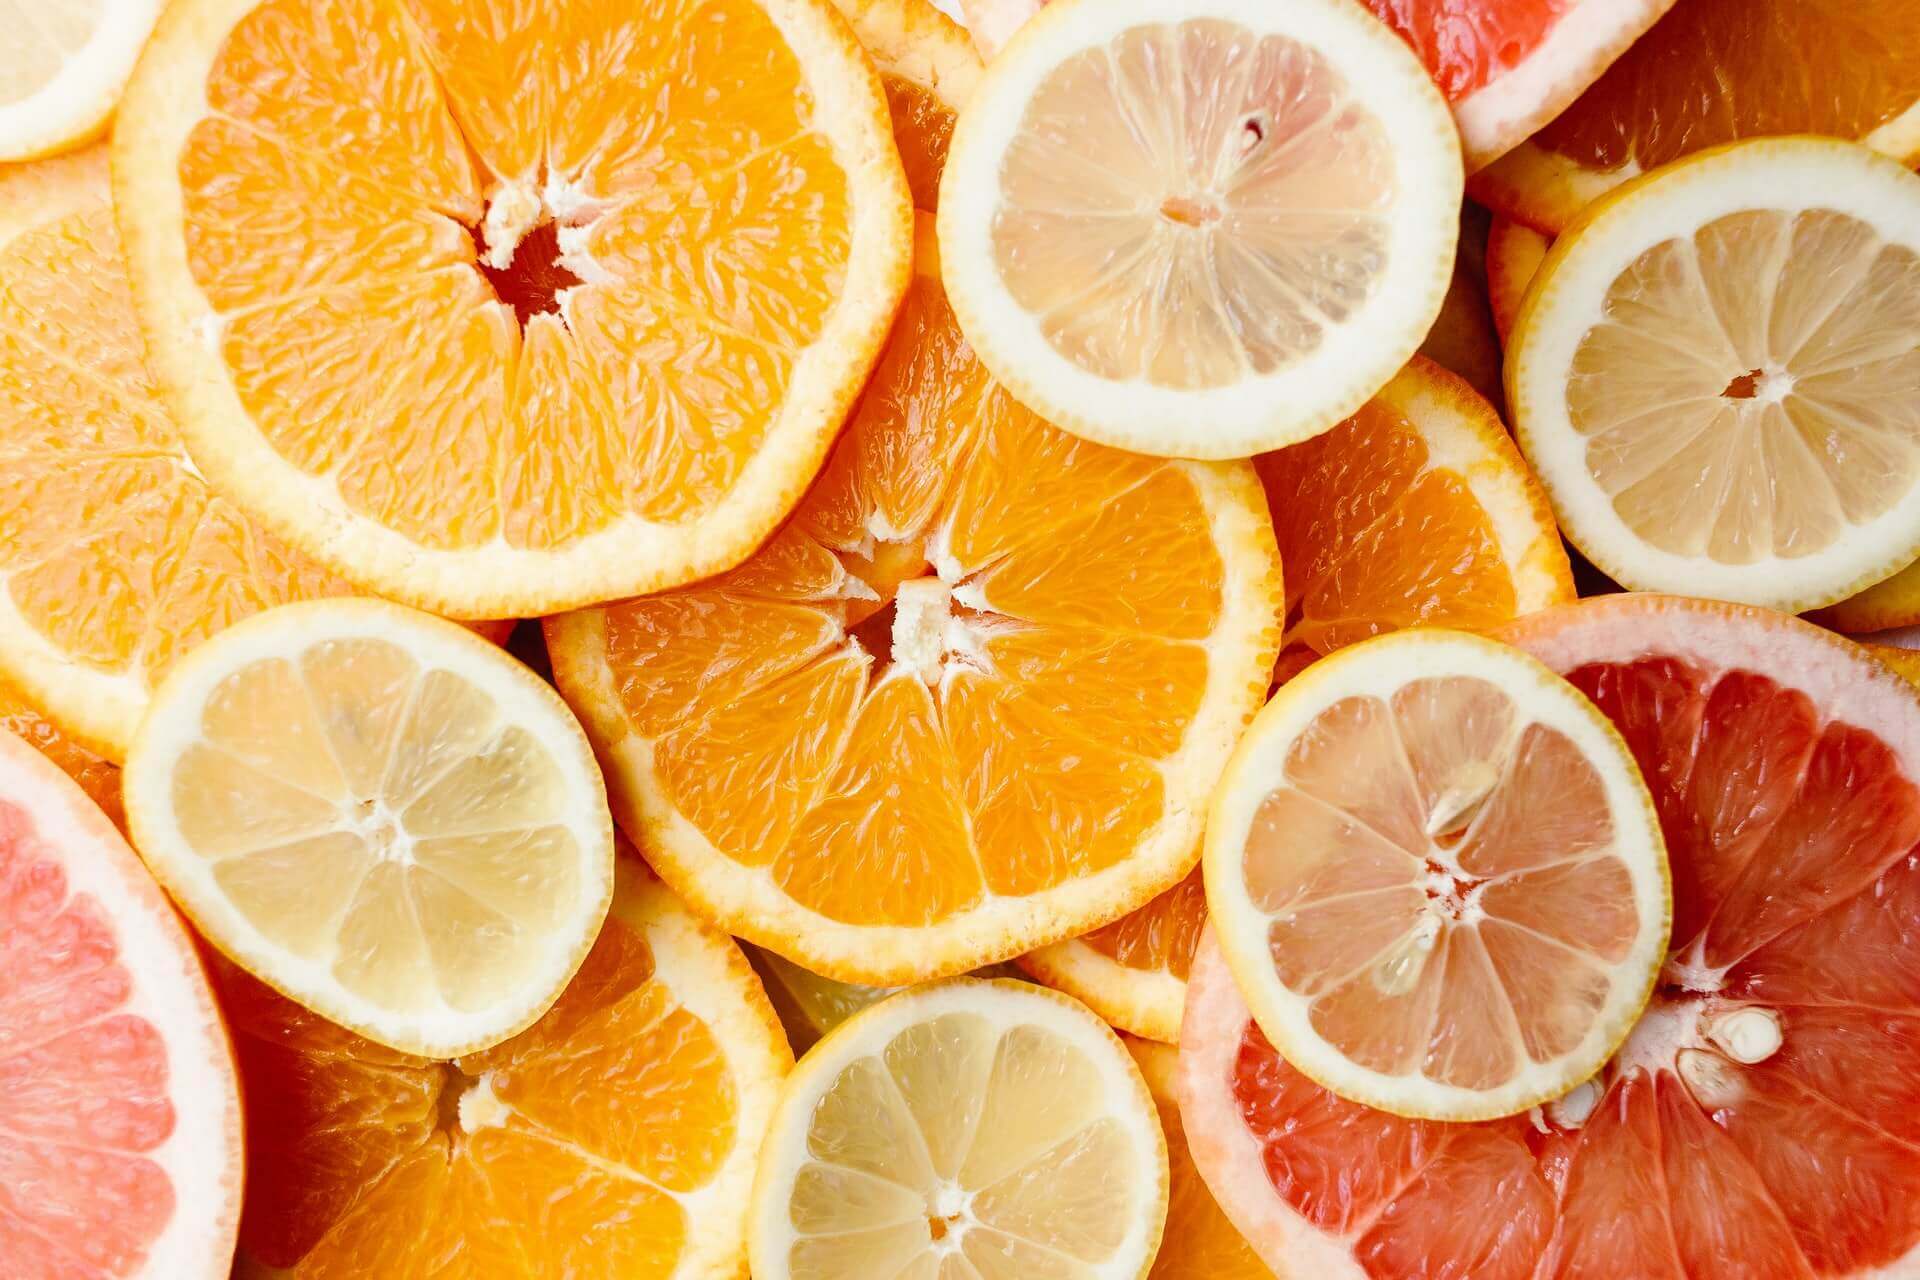 Πορτοκάλι, λεμόνι και μανταρίνι θωρακίζουν τον οργανισμό με τα συστατικά τους, αλλά κυρίως με τη βιταμίνη C που περιέχουν.